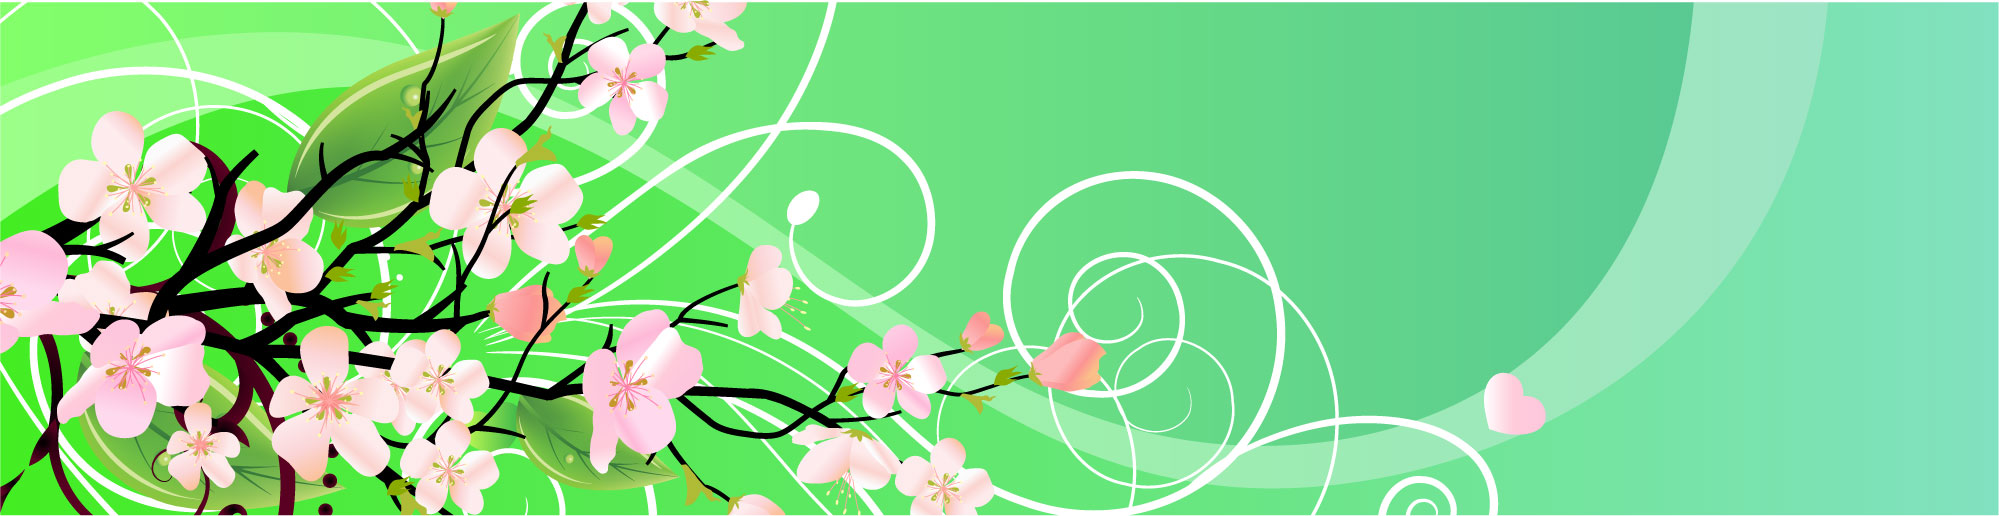 花や葉のイラスト フリー素材 バナー タイトル枠no 058 ピンク 枝葉 緑バック